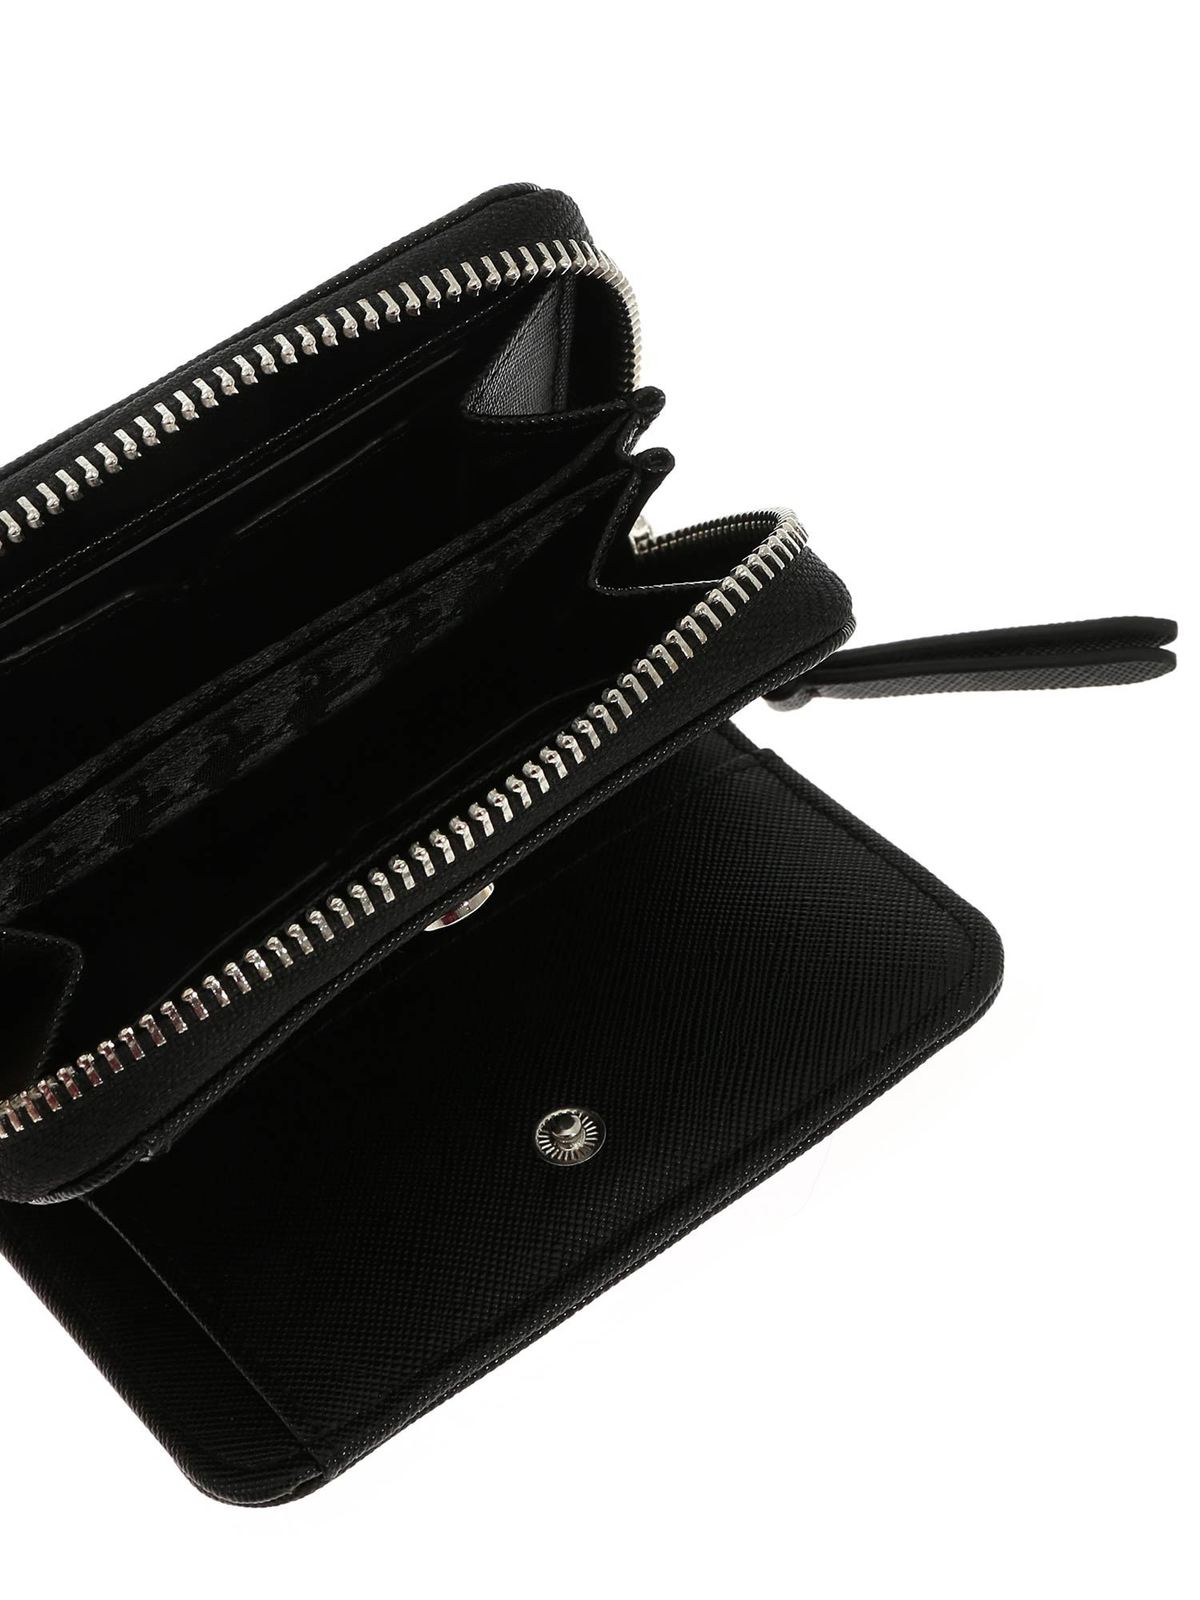 Wallets & purses Karl Lagerfeld - K Ikonik black wallet - 201W3202999